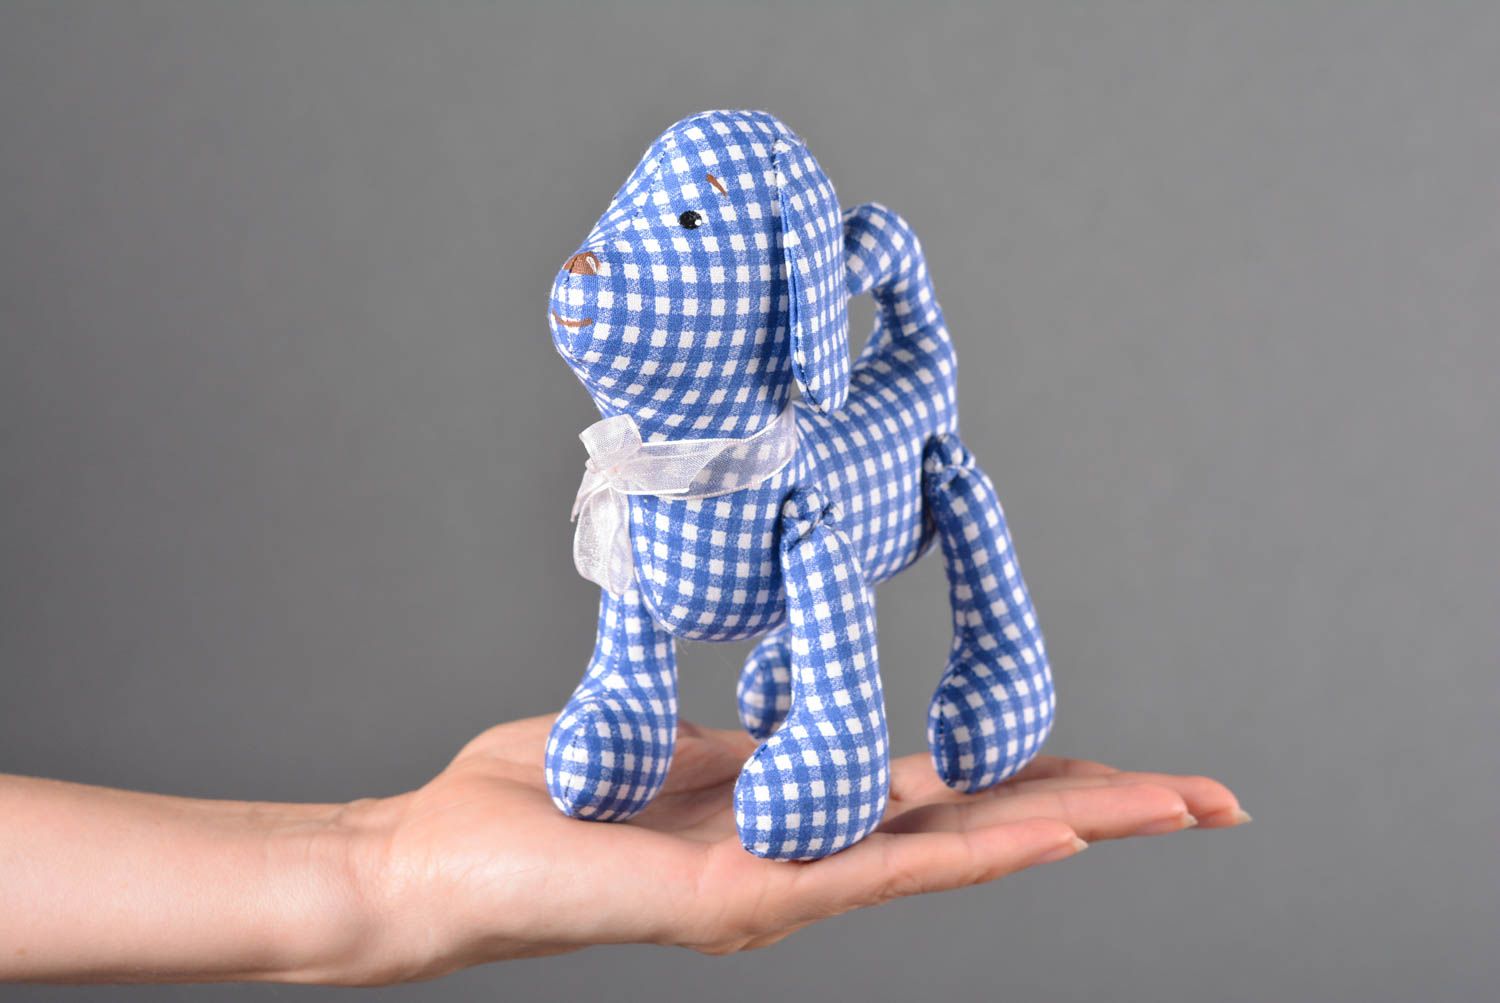 Игрушка собачка ручной работы детская игрушка расписанная акрилом мягкая игрушка фото 3